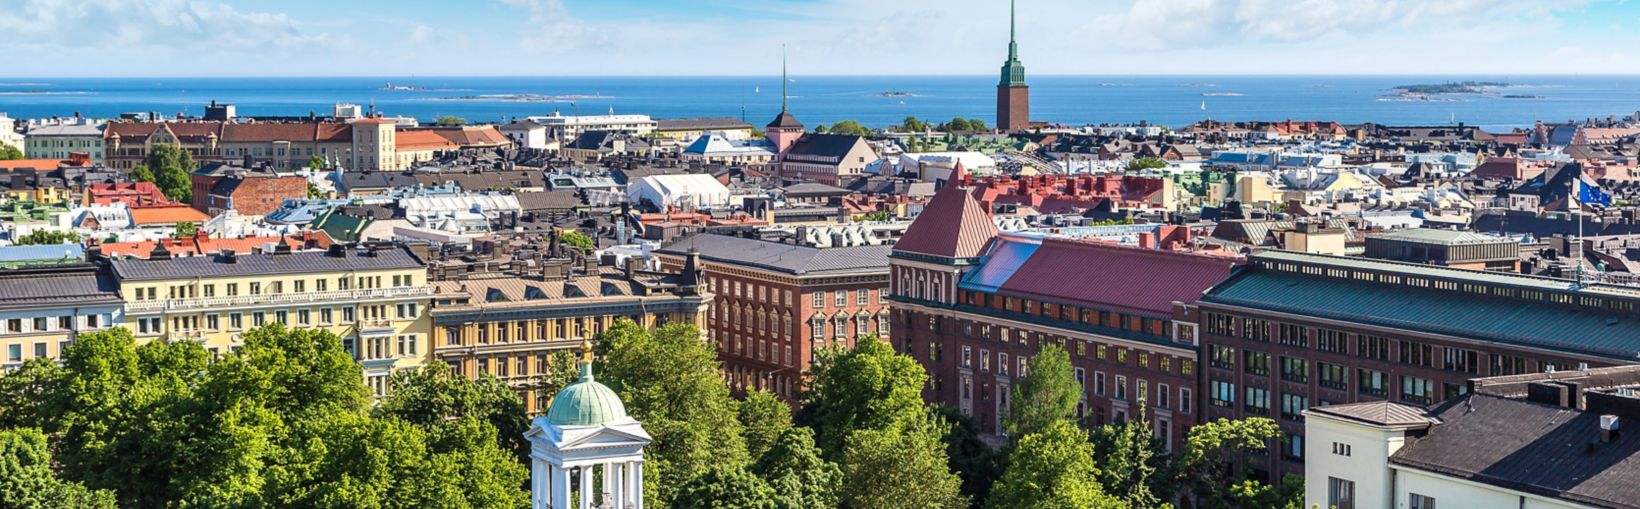 Panoramabilde av Helsinki i Finland sett fra luften en vakker sommerdag